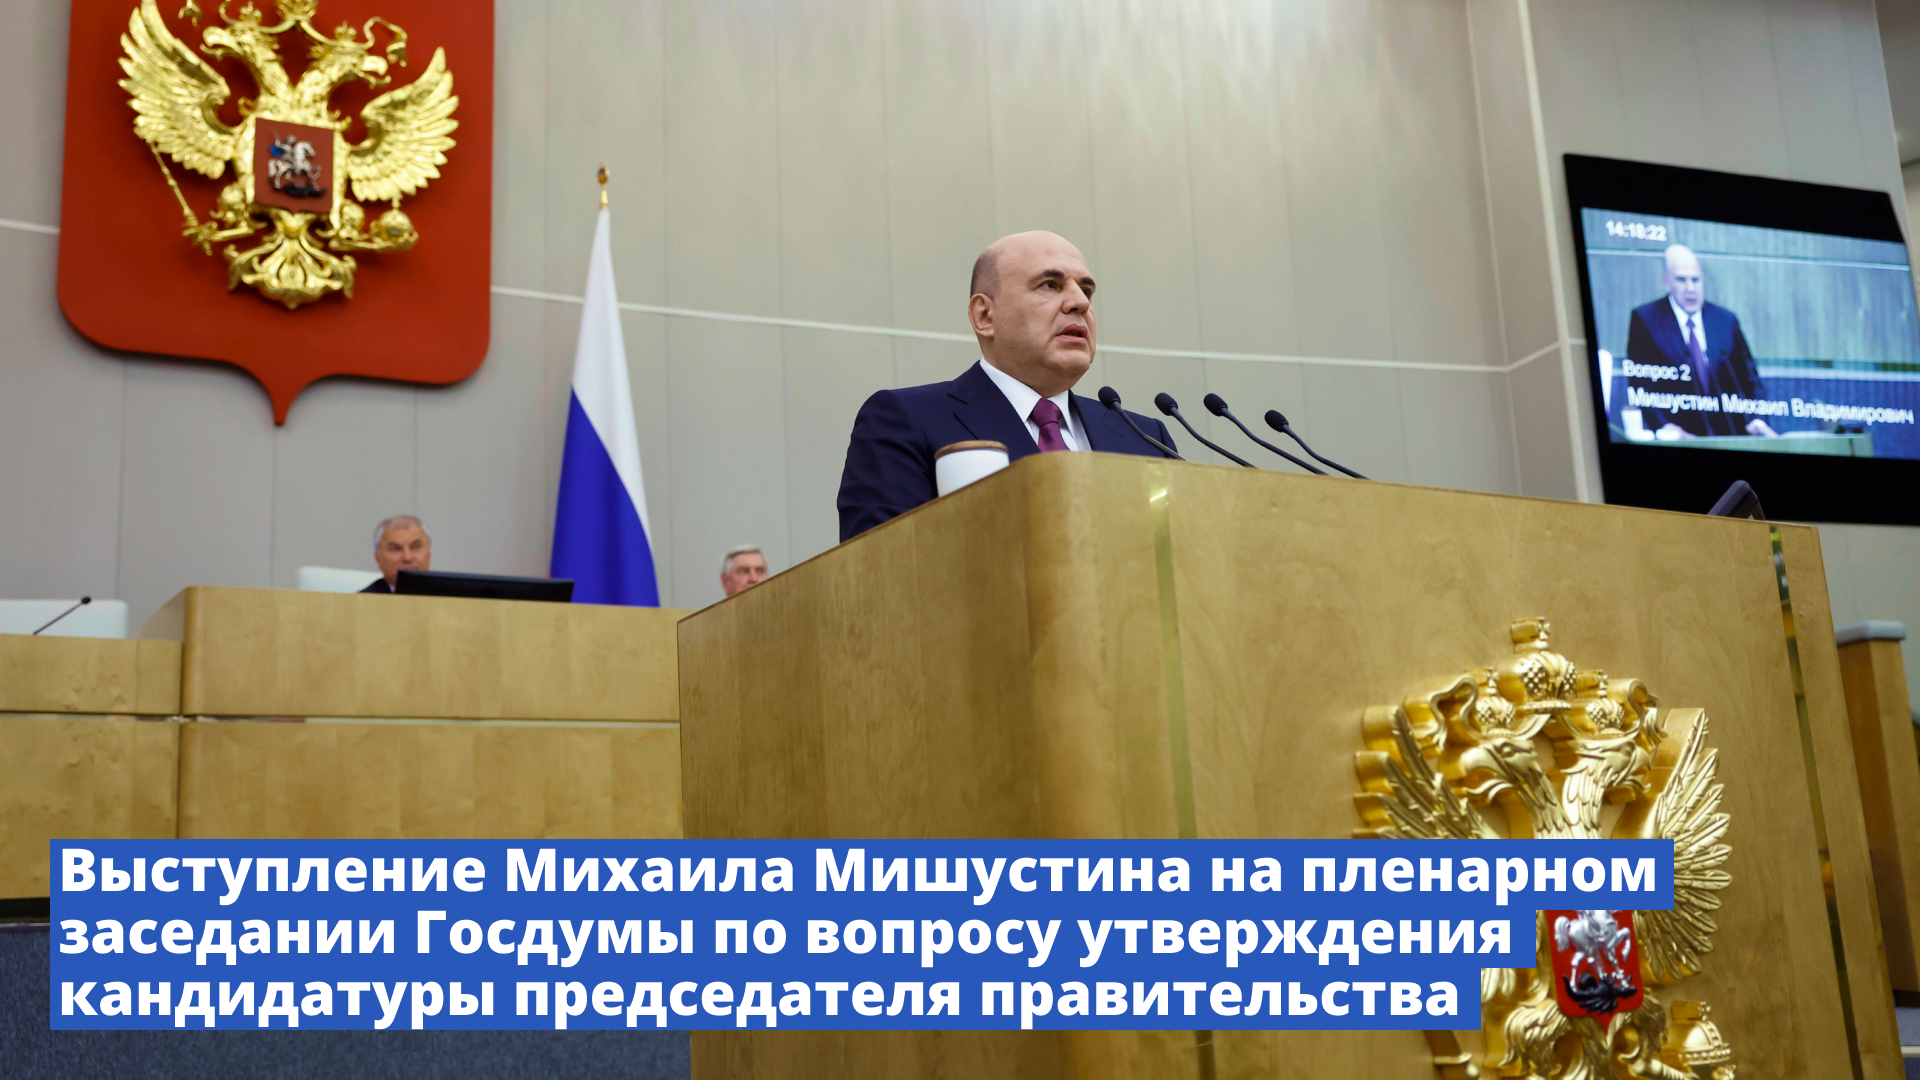 Выступление Михаила Мишустина в Госдуме по вопросу утверждения кандидатуры главы правительства